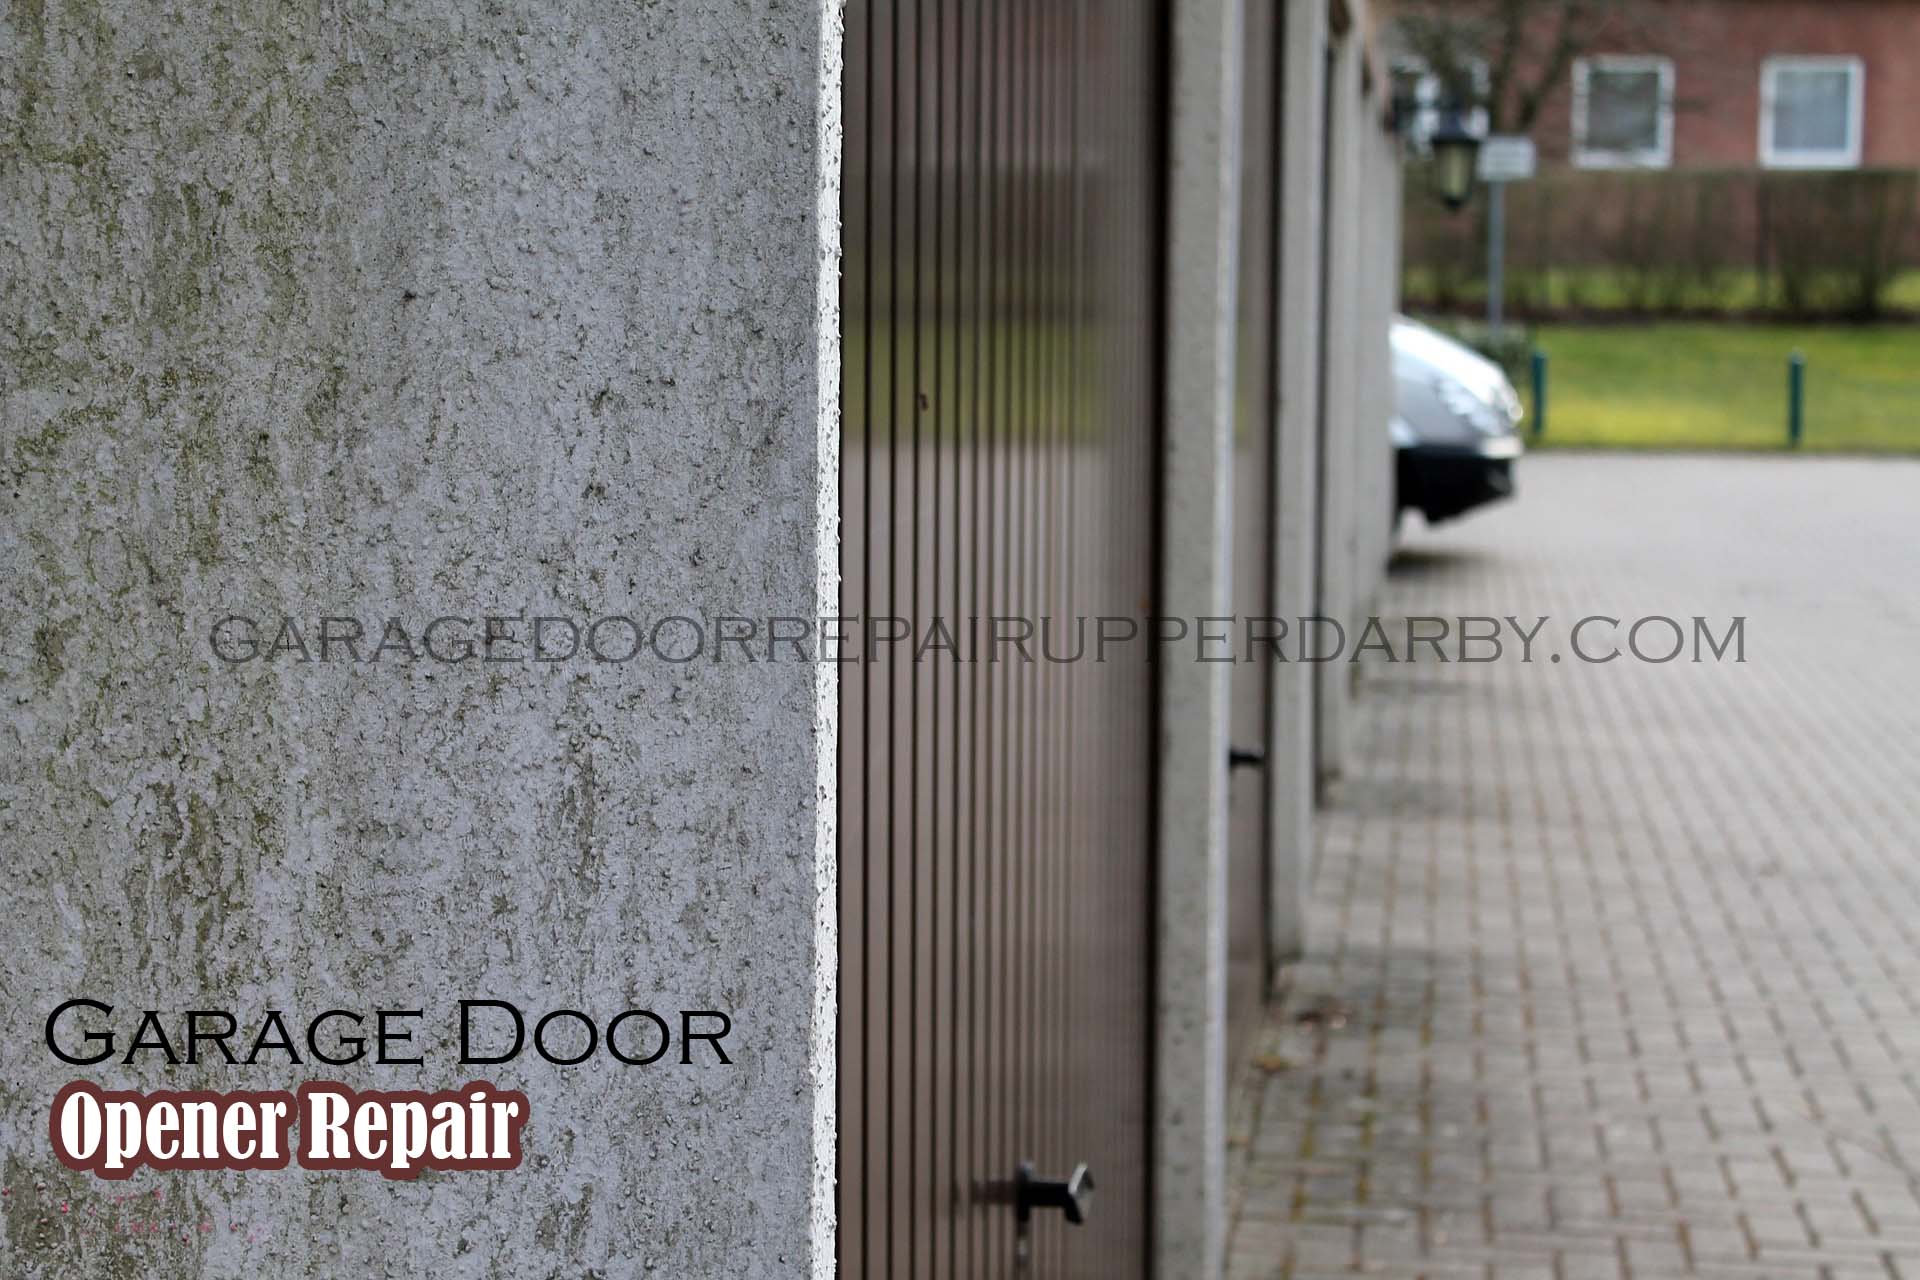 Upper-Darby-garage-door-opener-repair